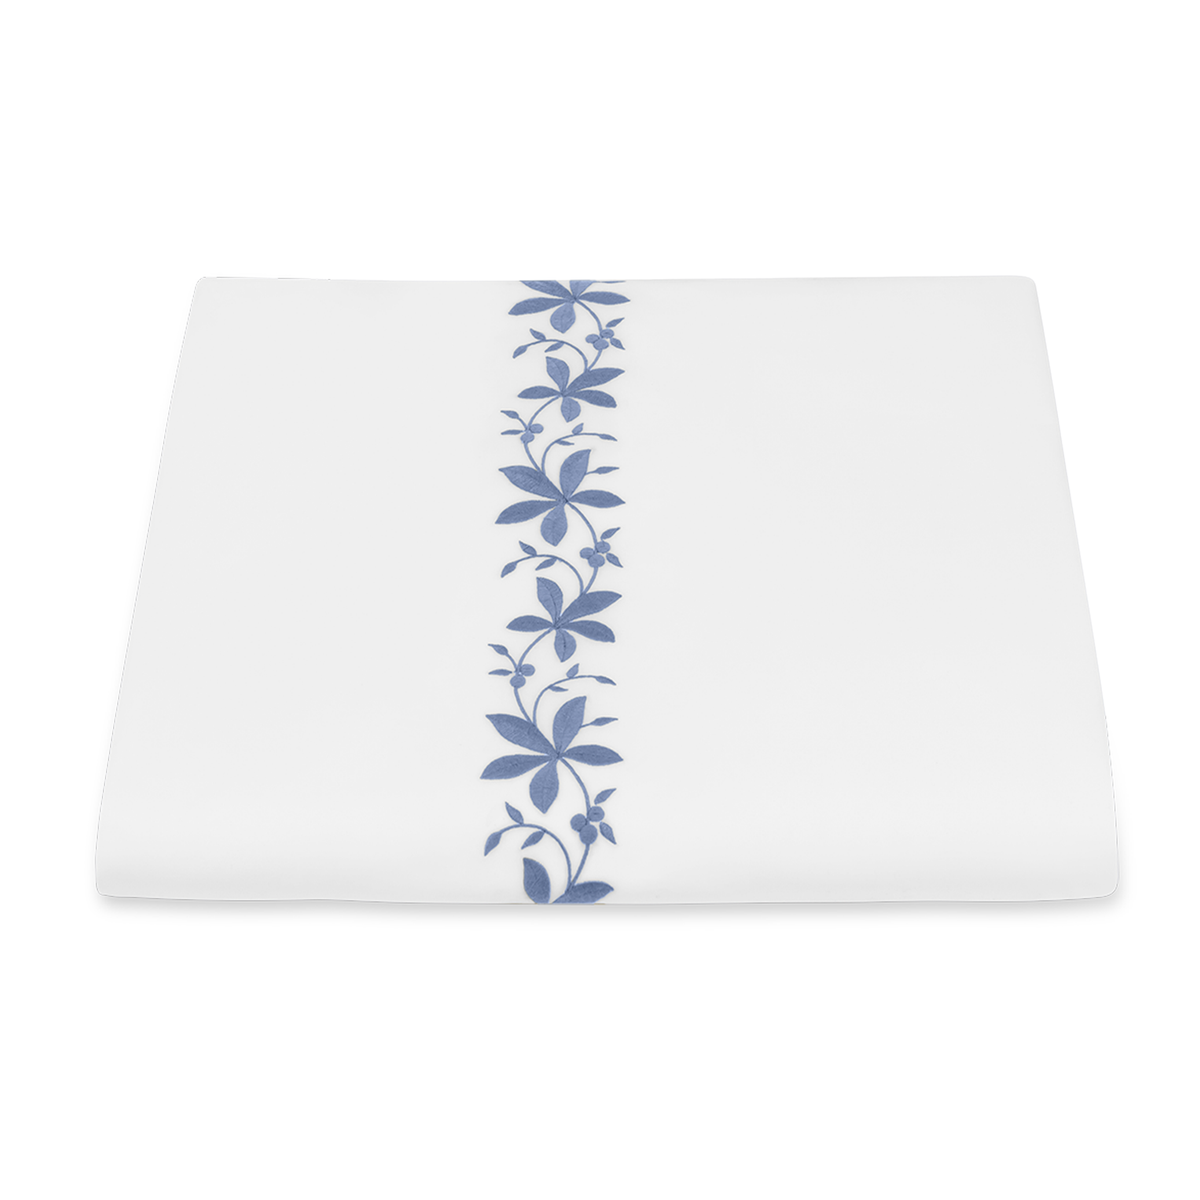 Folded Duvet Cover of Matouk Callista Bedding in Bluebell Color